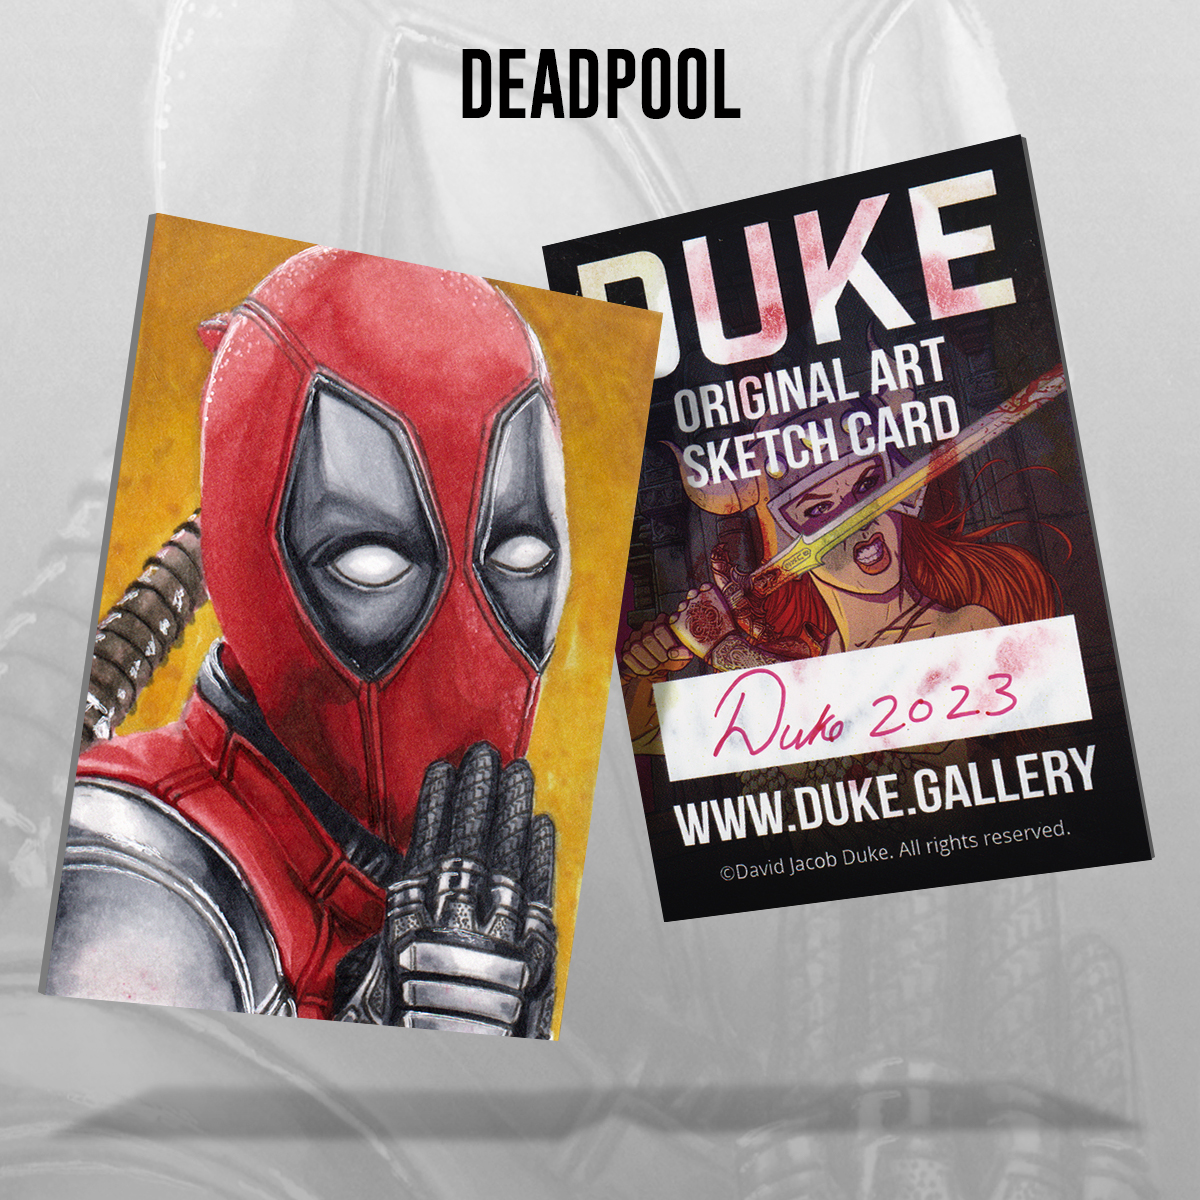 Deadpool Sketch Card by Duke